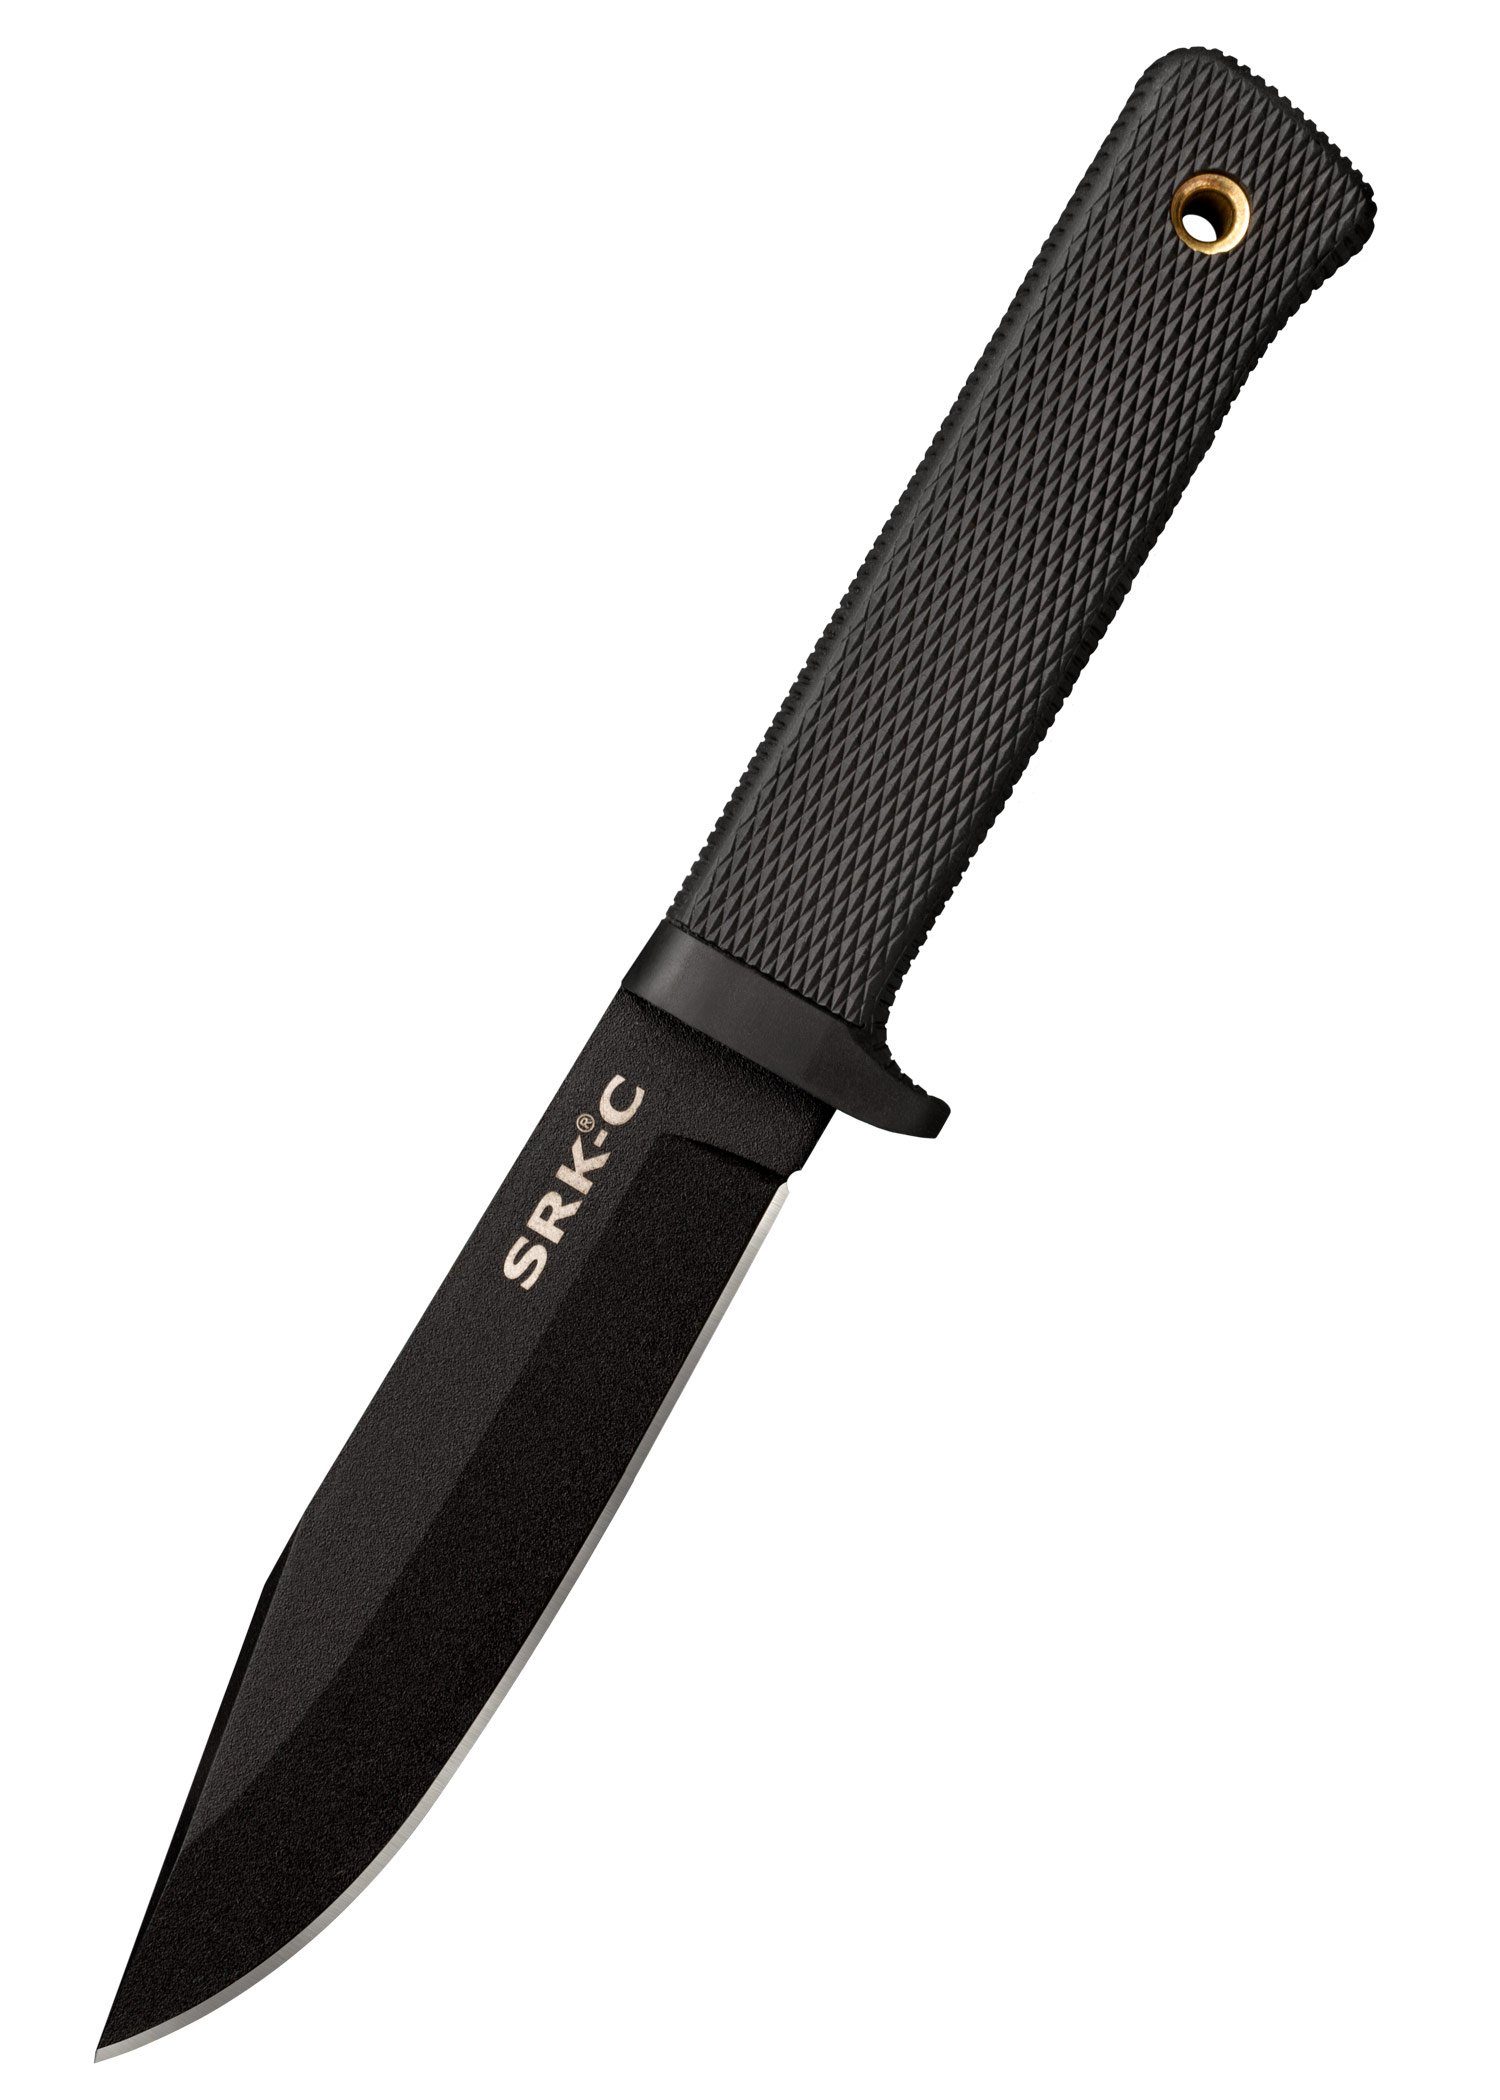 100% Qualität Cold Steel Survival Knife feststehendes Cold Compact Messer SRK Rettungsmesser Steel mit Scheide